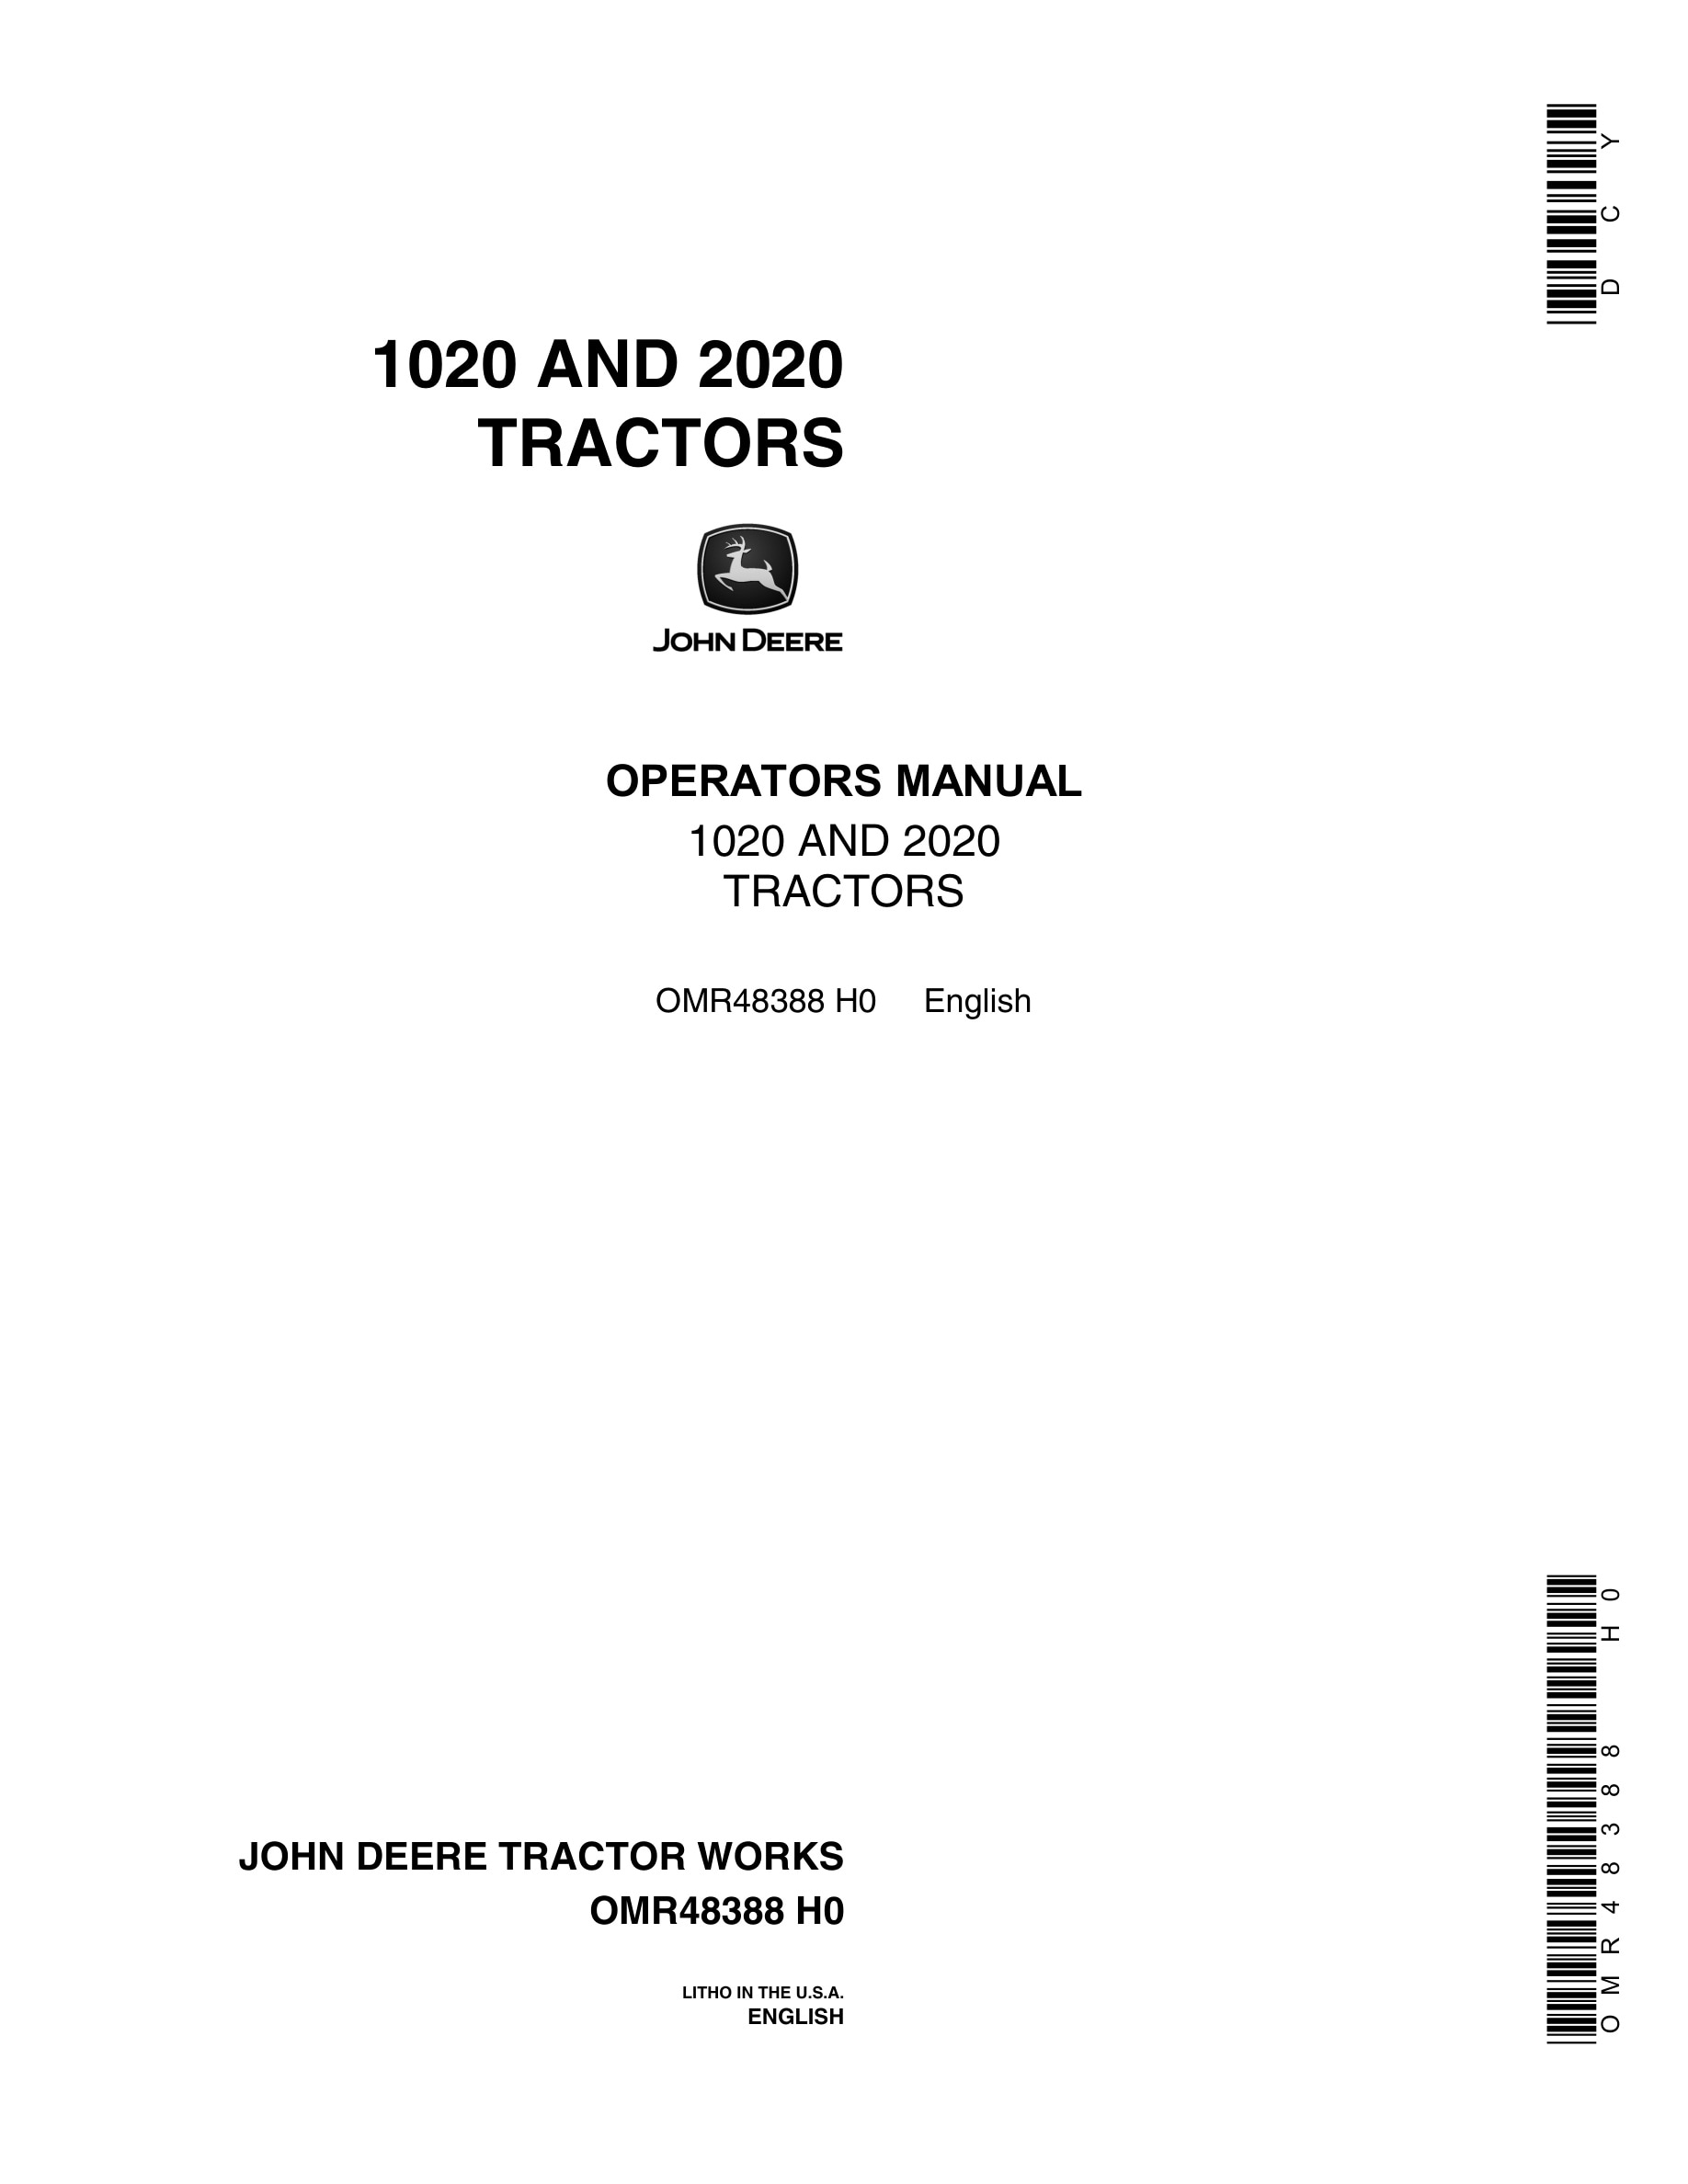 John Deere 1020 AND 2020 Tractor Operator Manual OMR48388-1